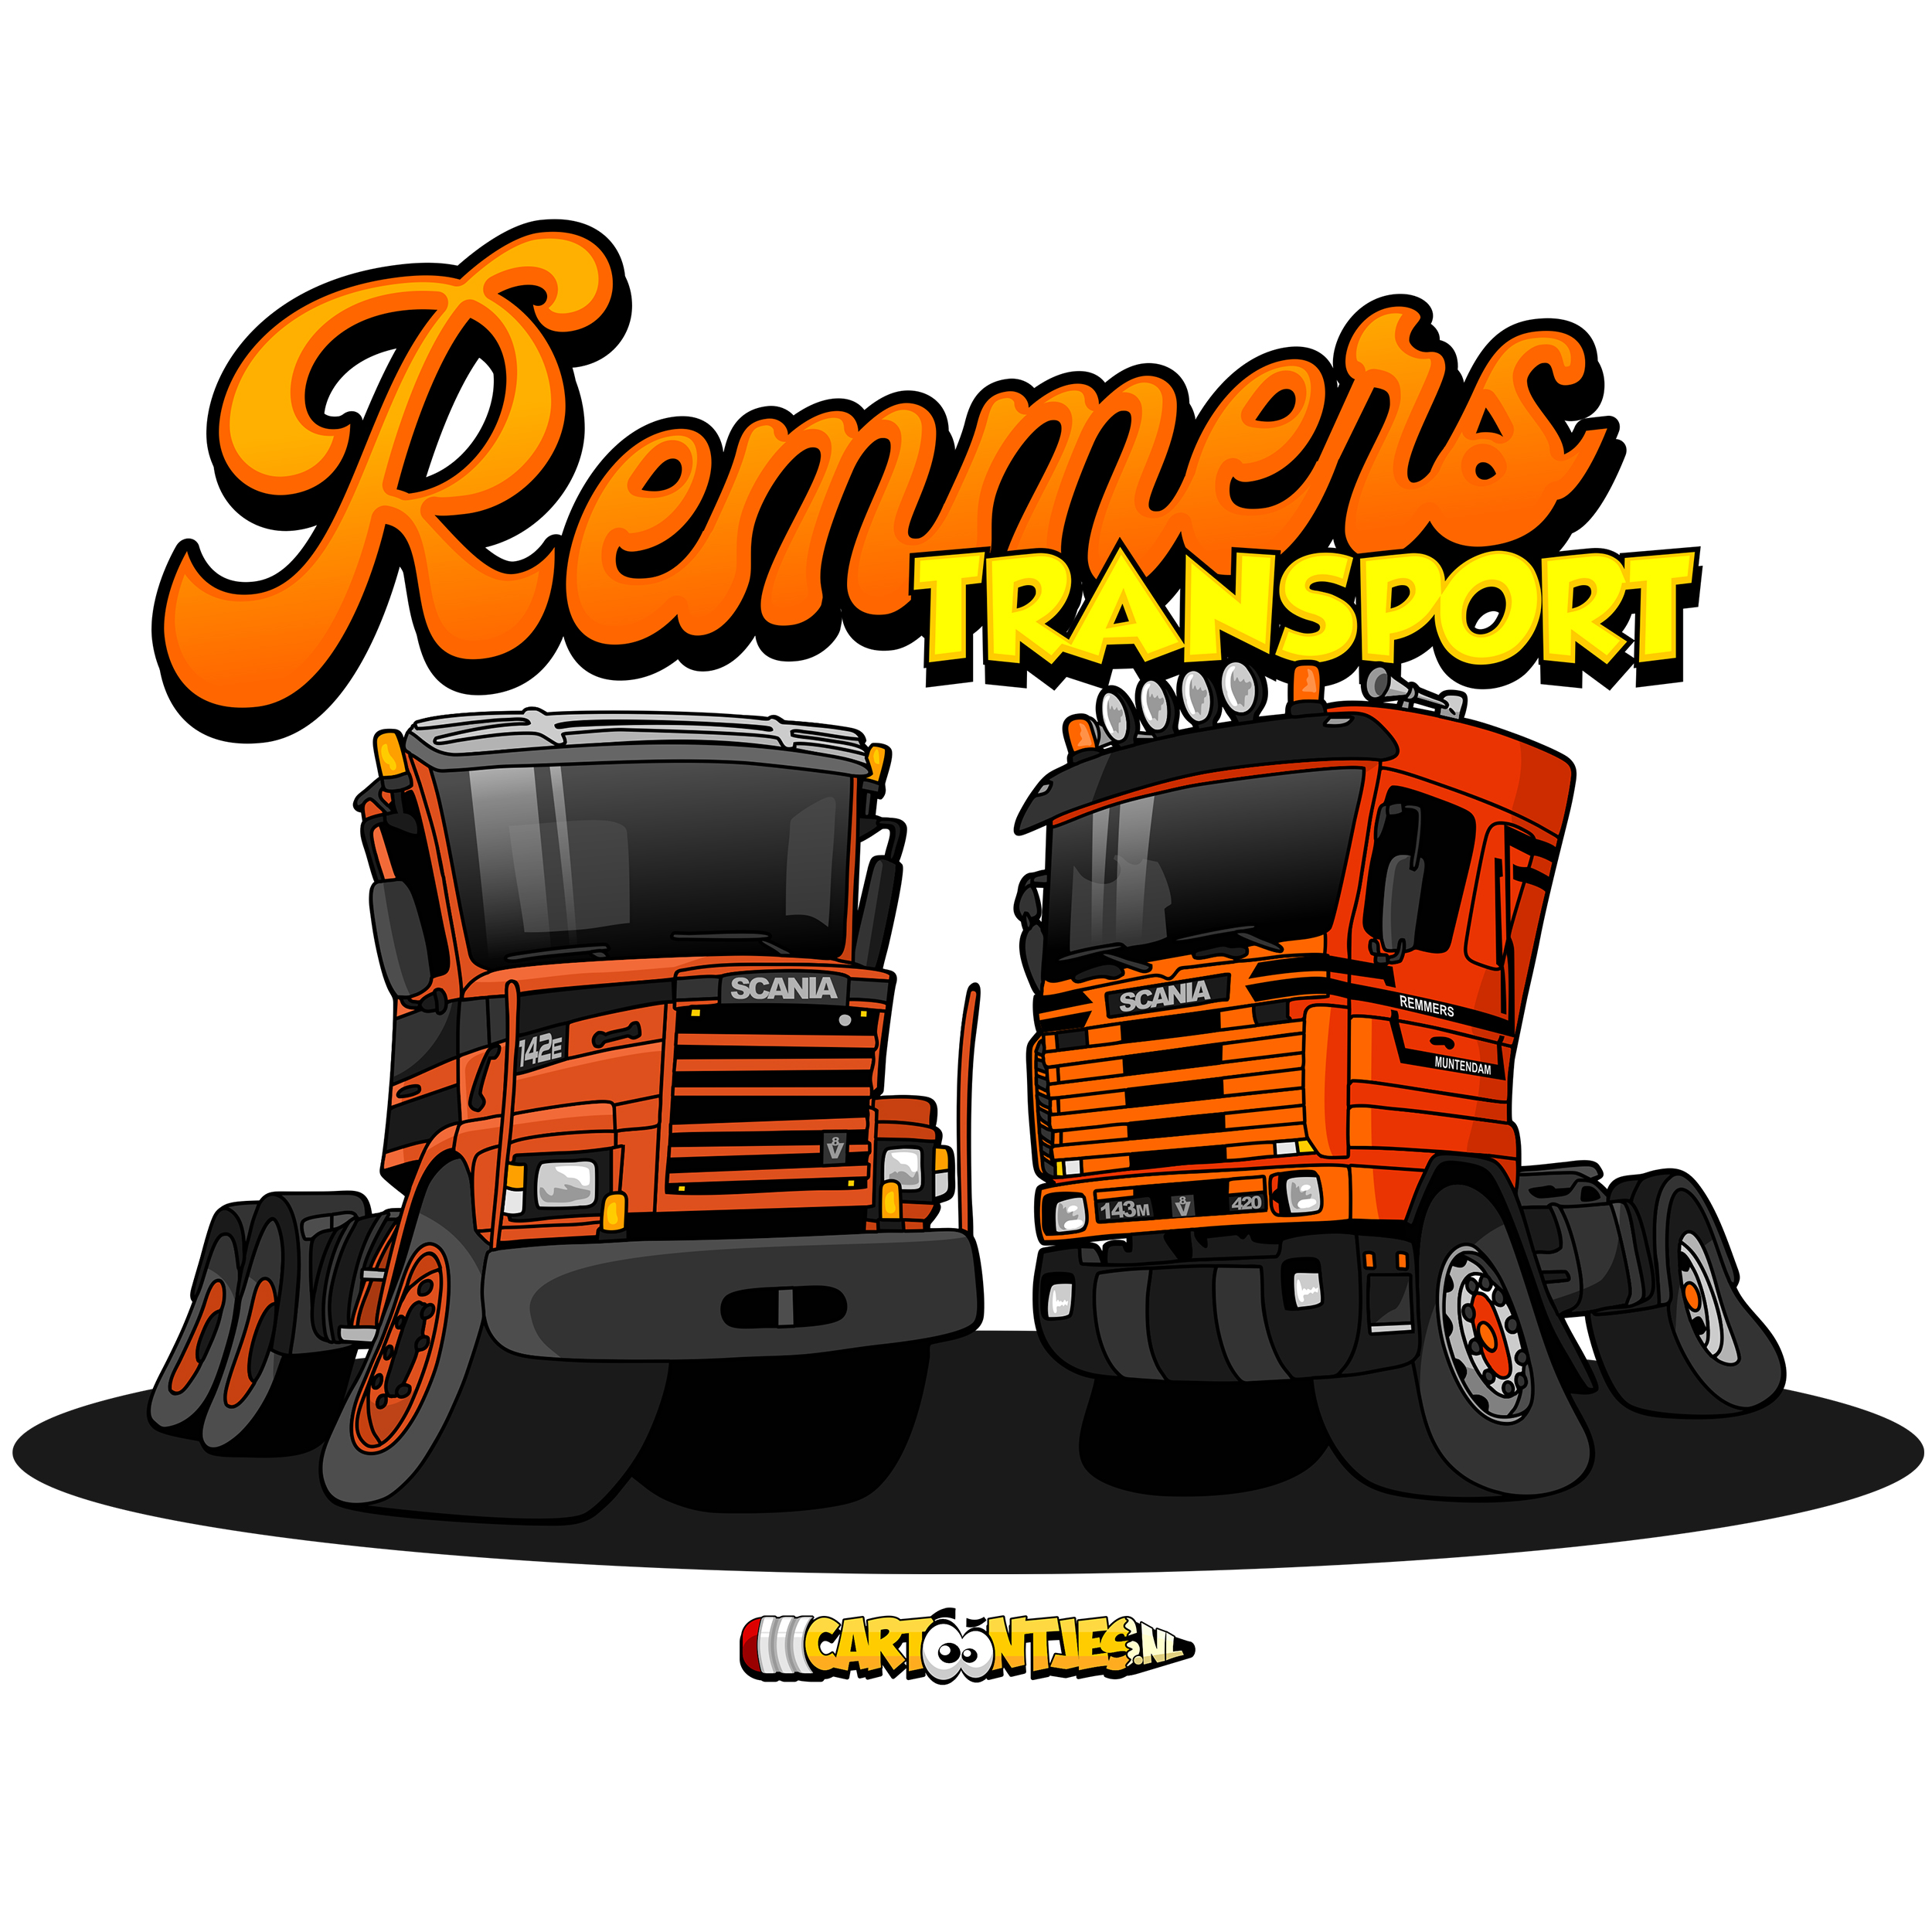 remmers transport logo